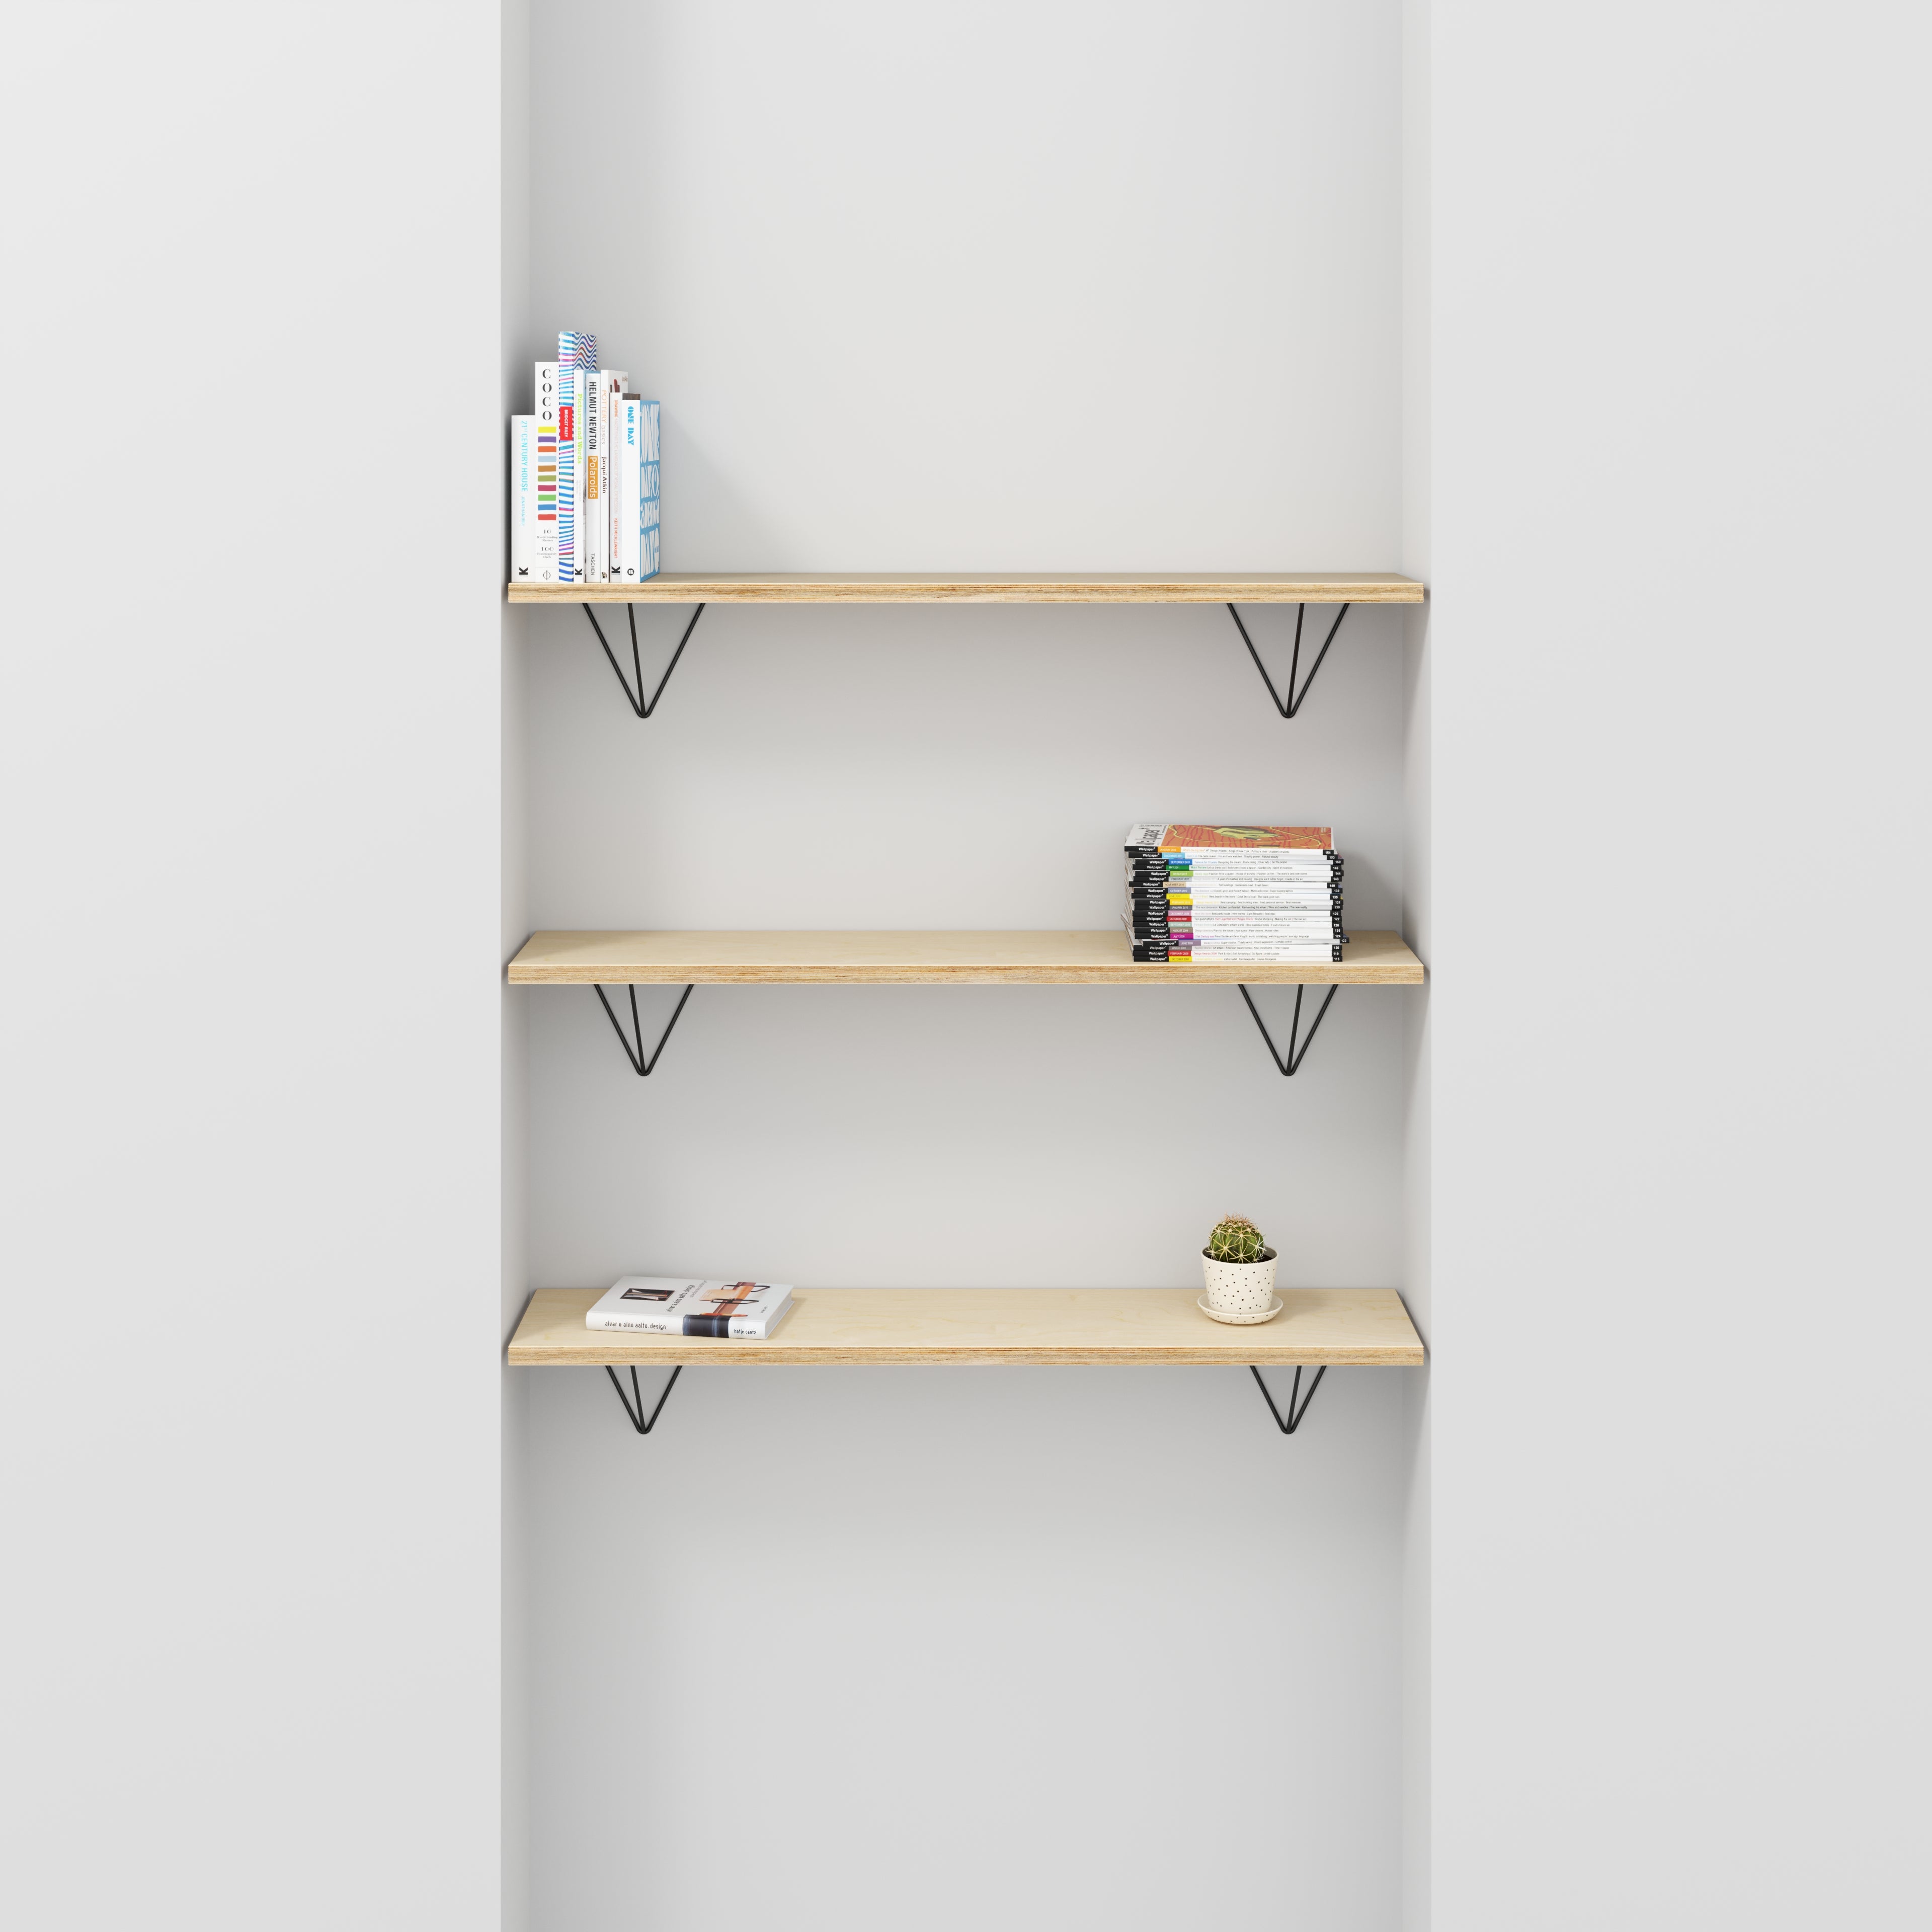 Custom Plywood Wall Shelf with Prism Brackets